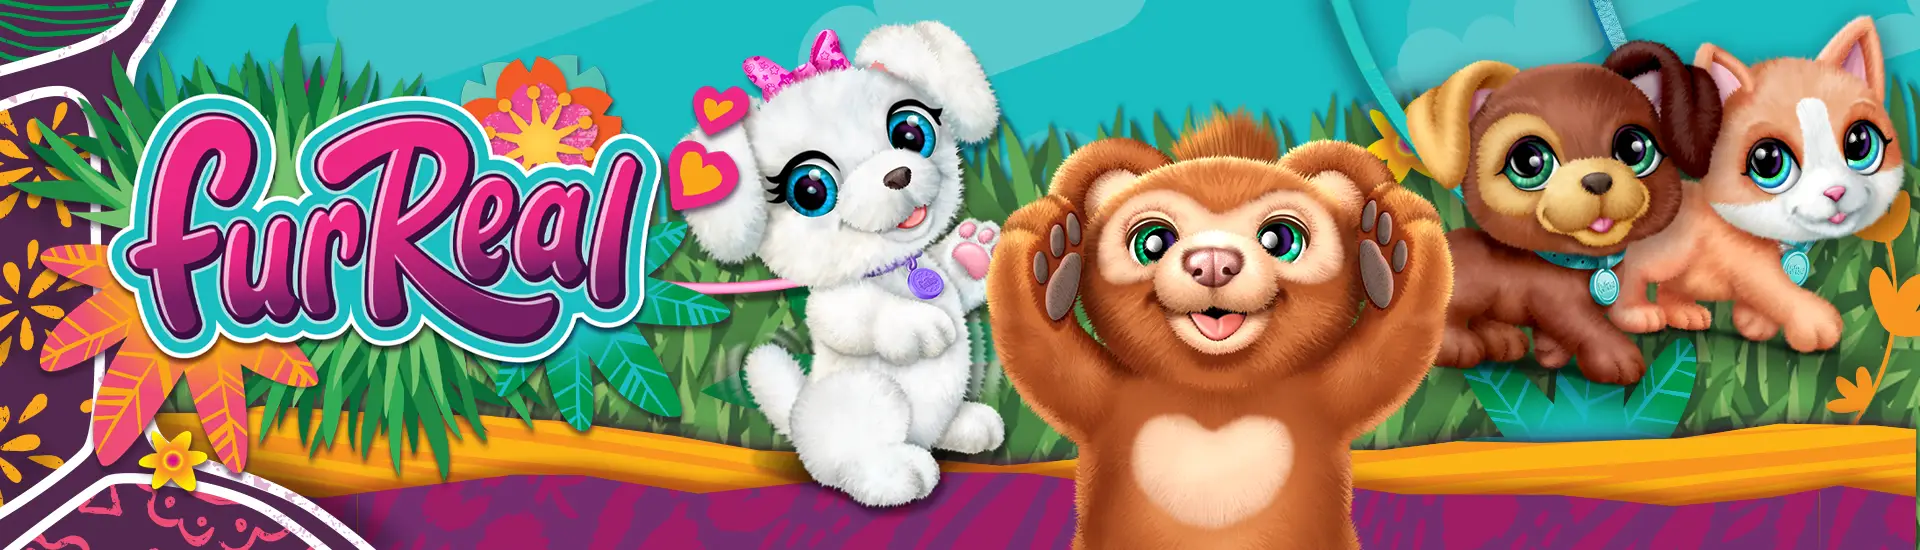 Peluche interactive Furreal Cubby Friends pour enfants, ours